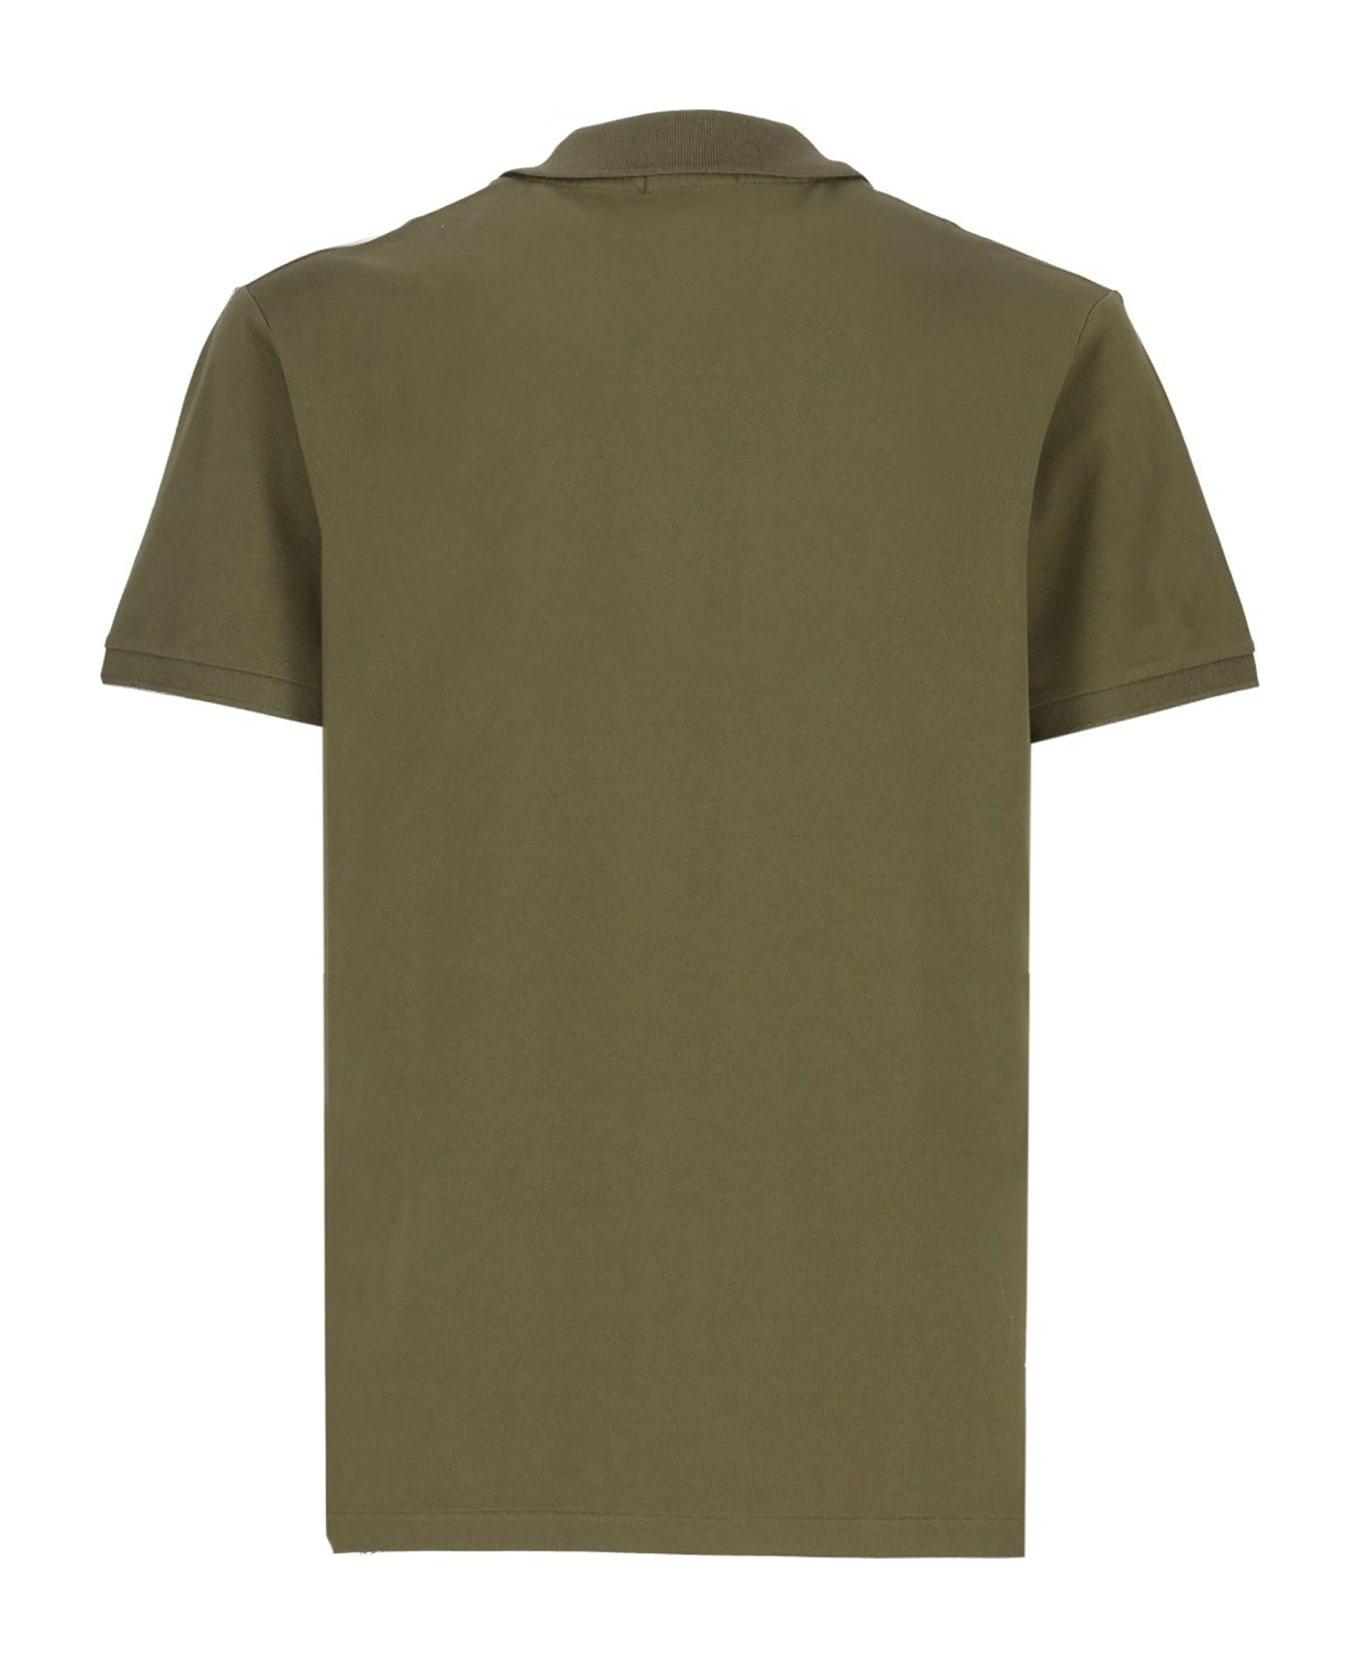 Ralph Lauren Green Cotton Polo Shirt - Green ポロシャツ